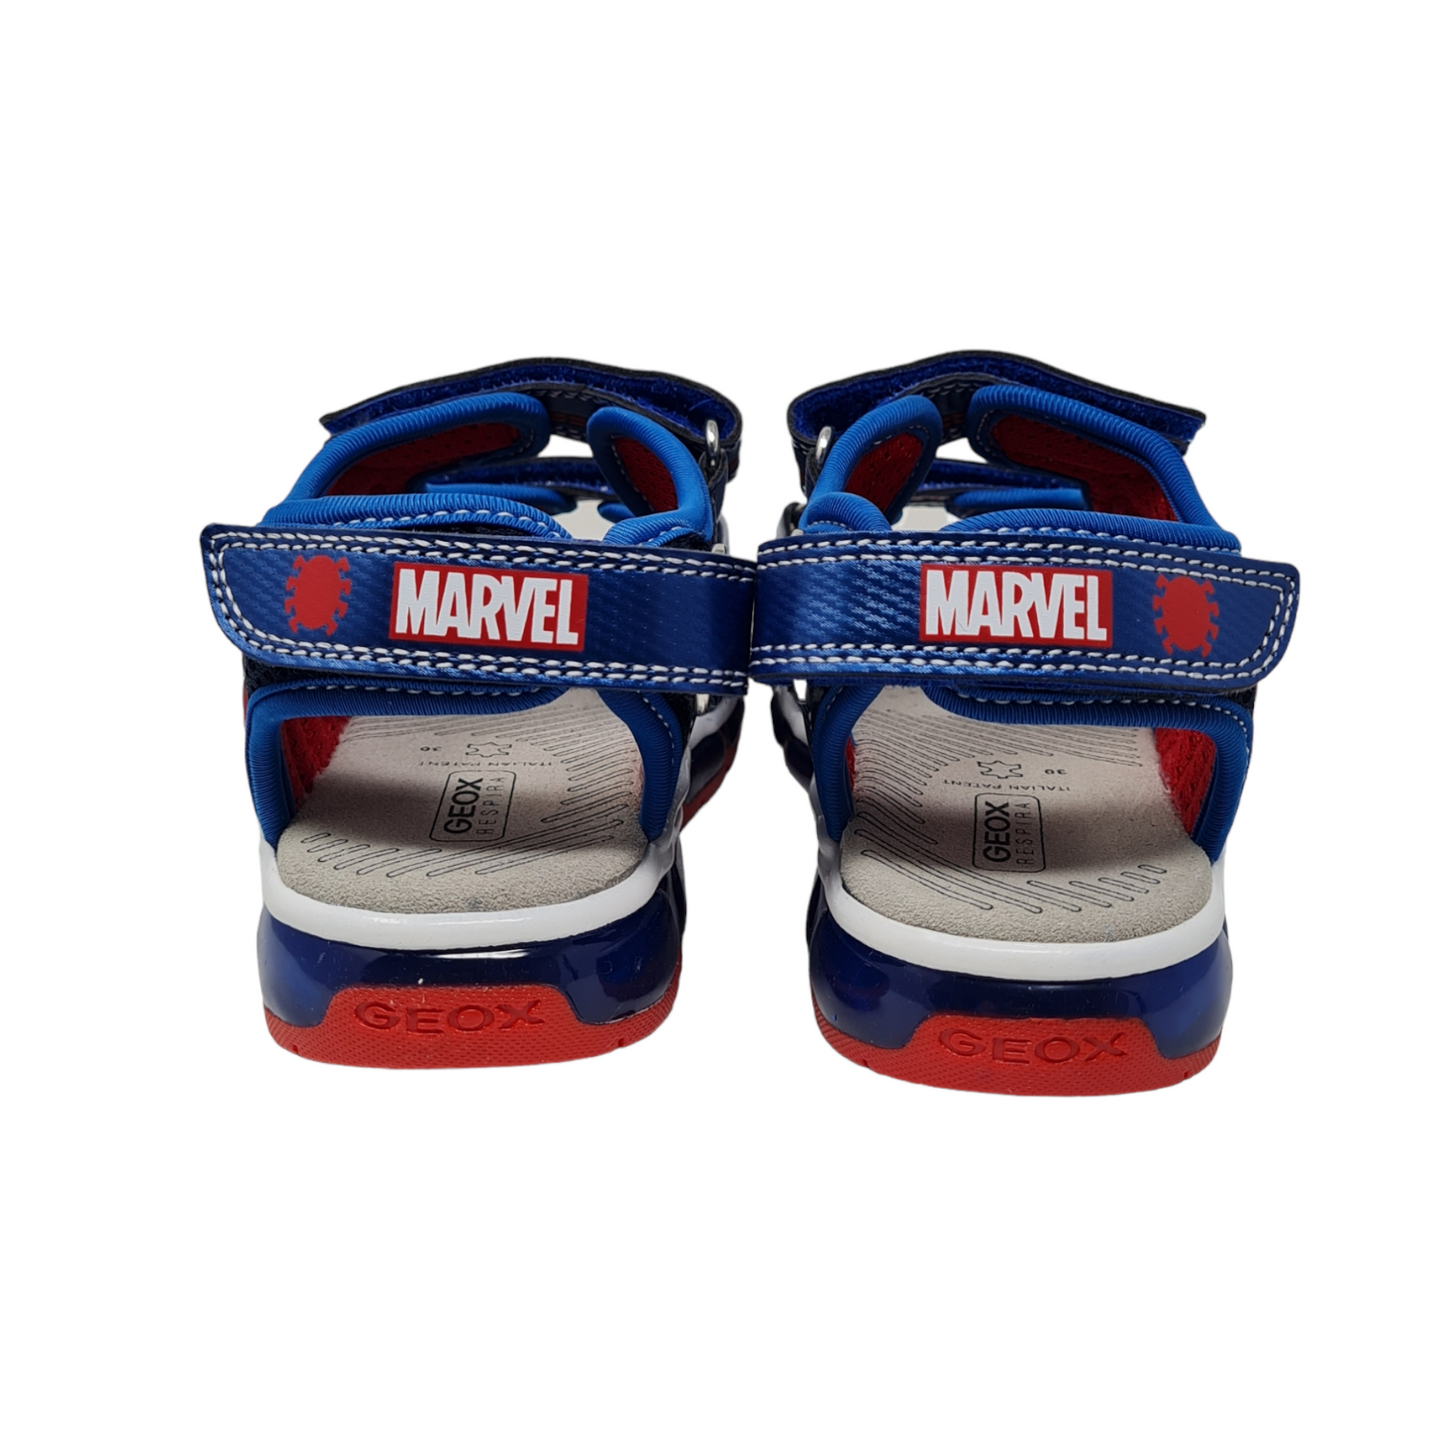 Spider Man Luci sandal J350QA/C4226